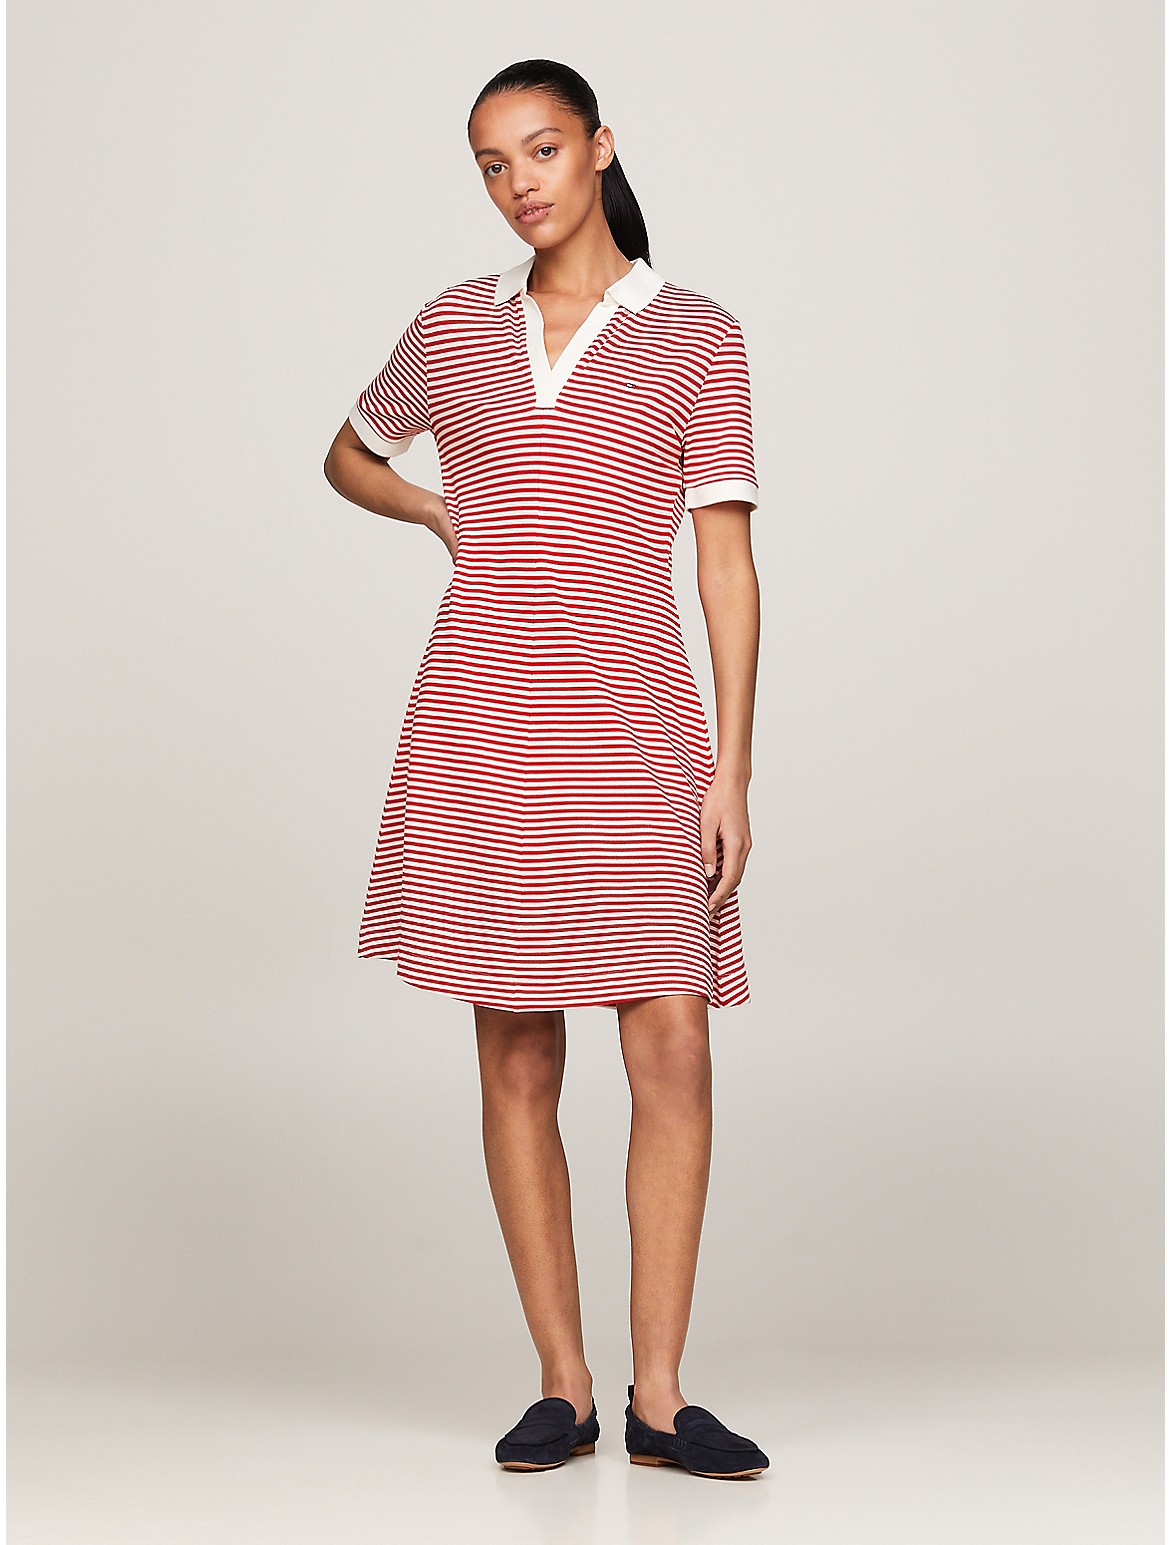 Tommy Hilfiger Women's Open Placket Stripe Polo Dress